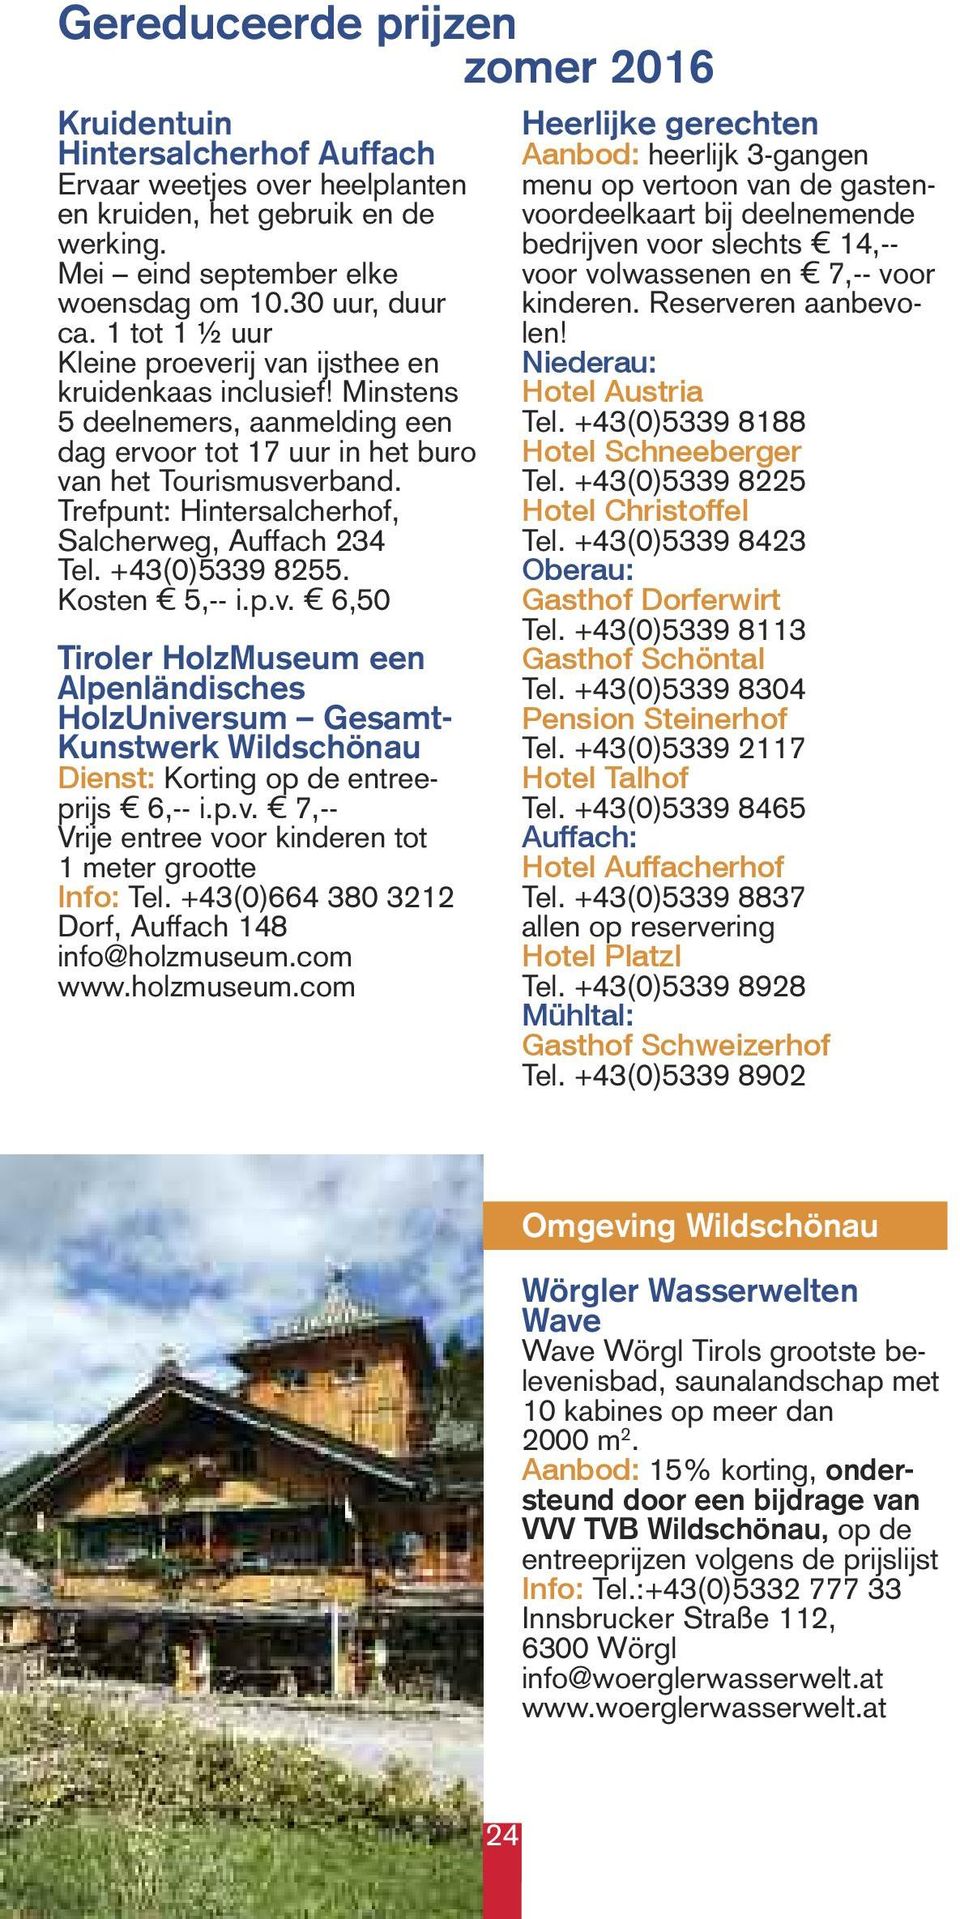 Trefpunt: Hintersalcherhof, Salcherweg, Auffach 234 Tel. +43(0)5339 8255. Kosten 5,-- i.p.v.